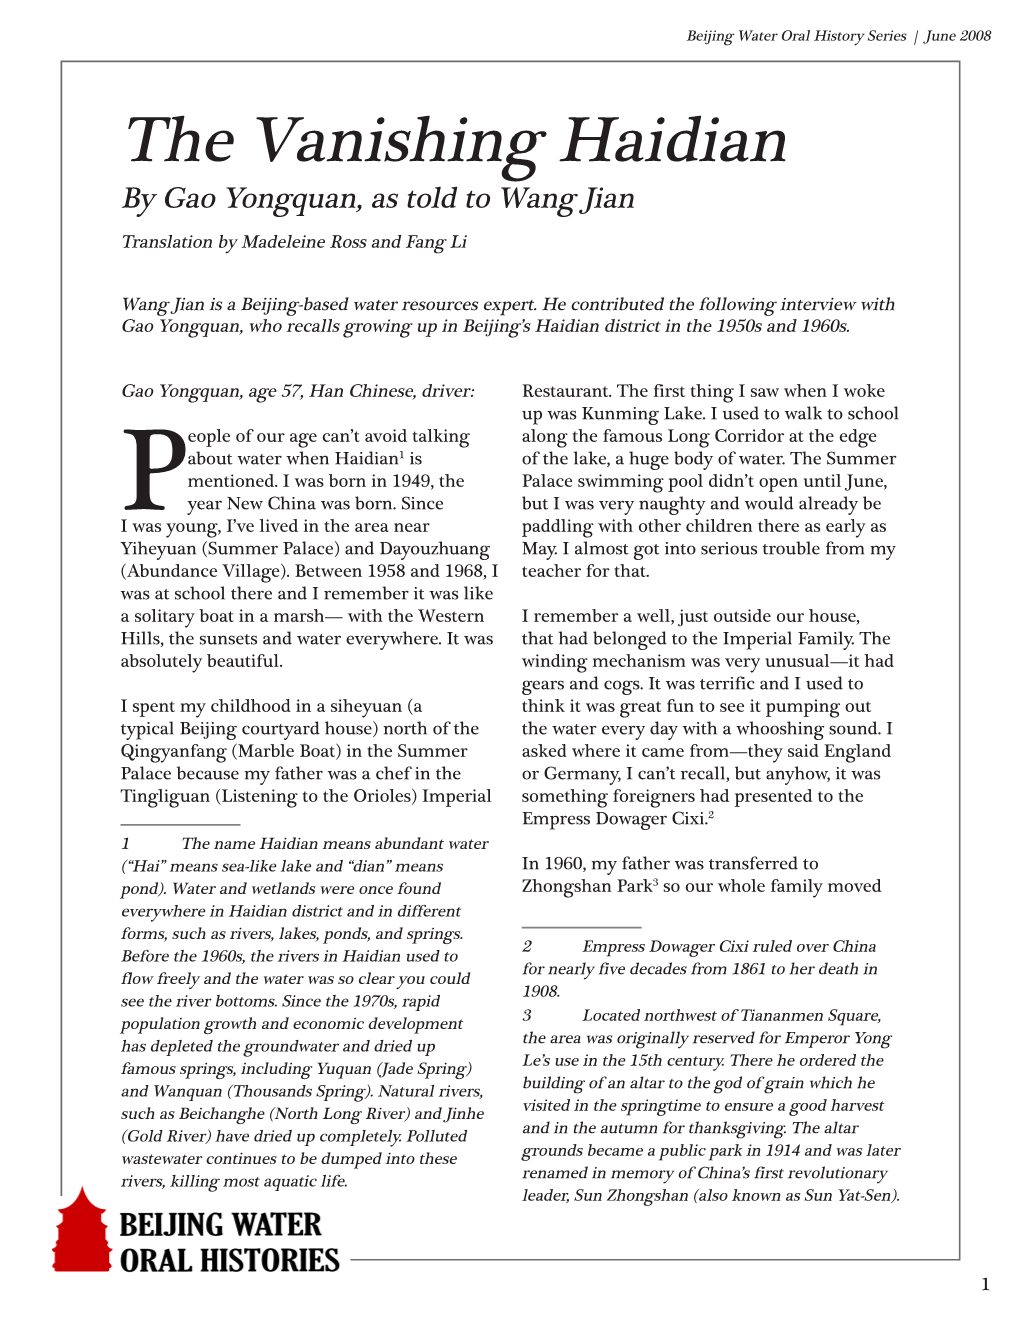 The Vanishing Haidian by Gao Yongquan, As Told to Wang Jian Translation by Madeleine Ross and Fang Li